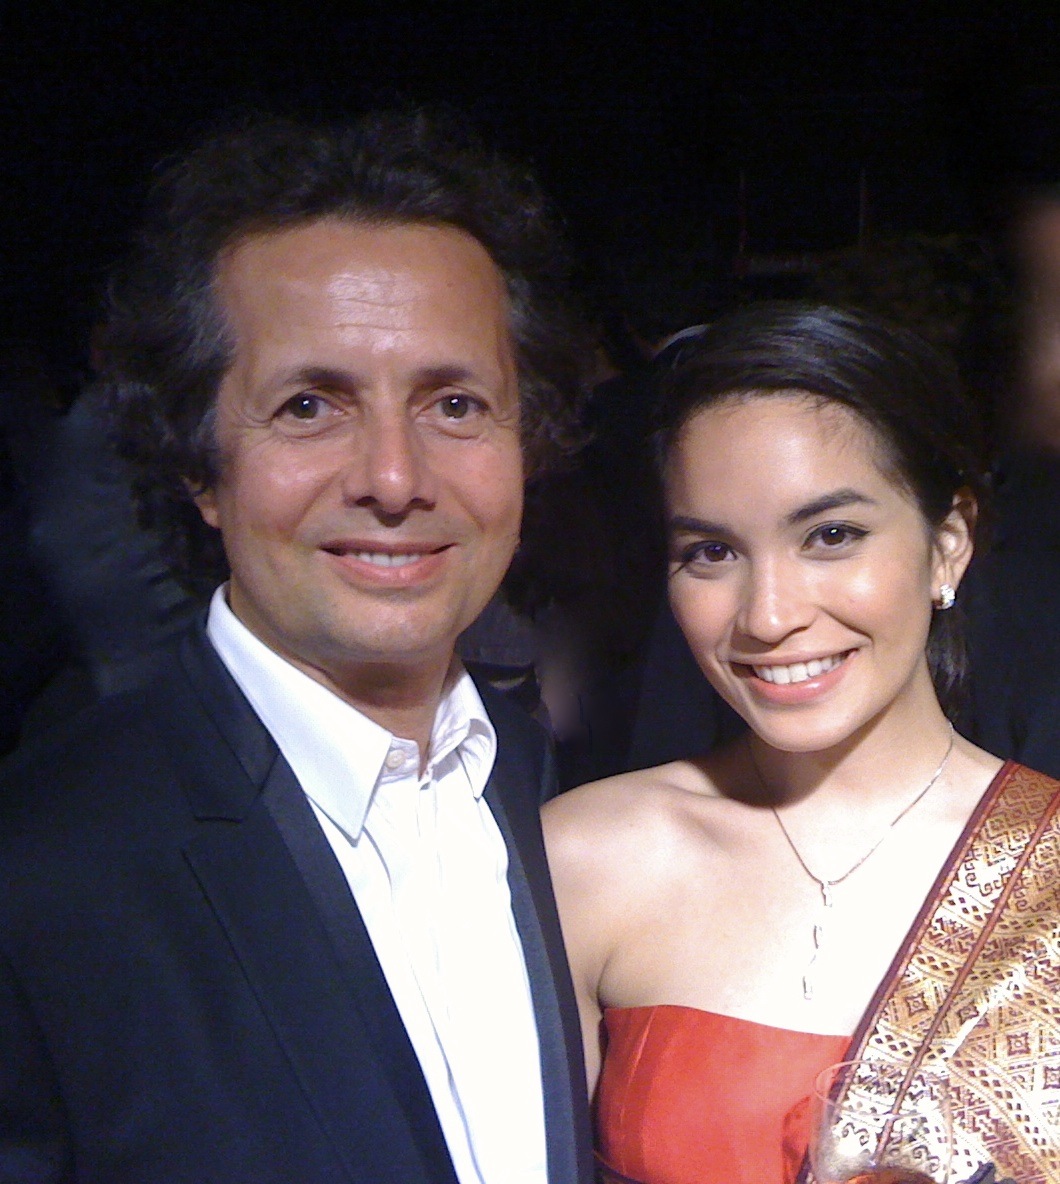 With Krystal Vee, Cannes 2010